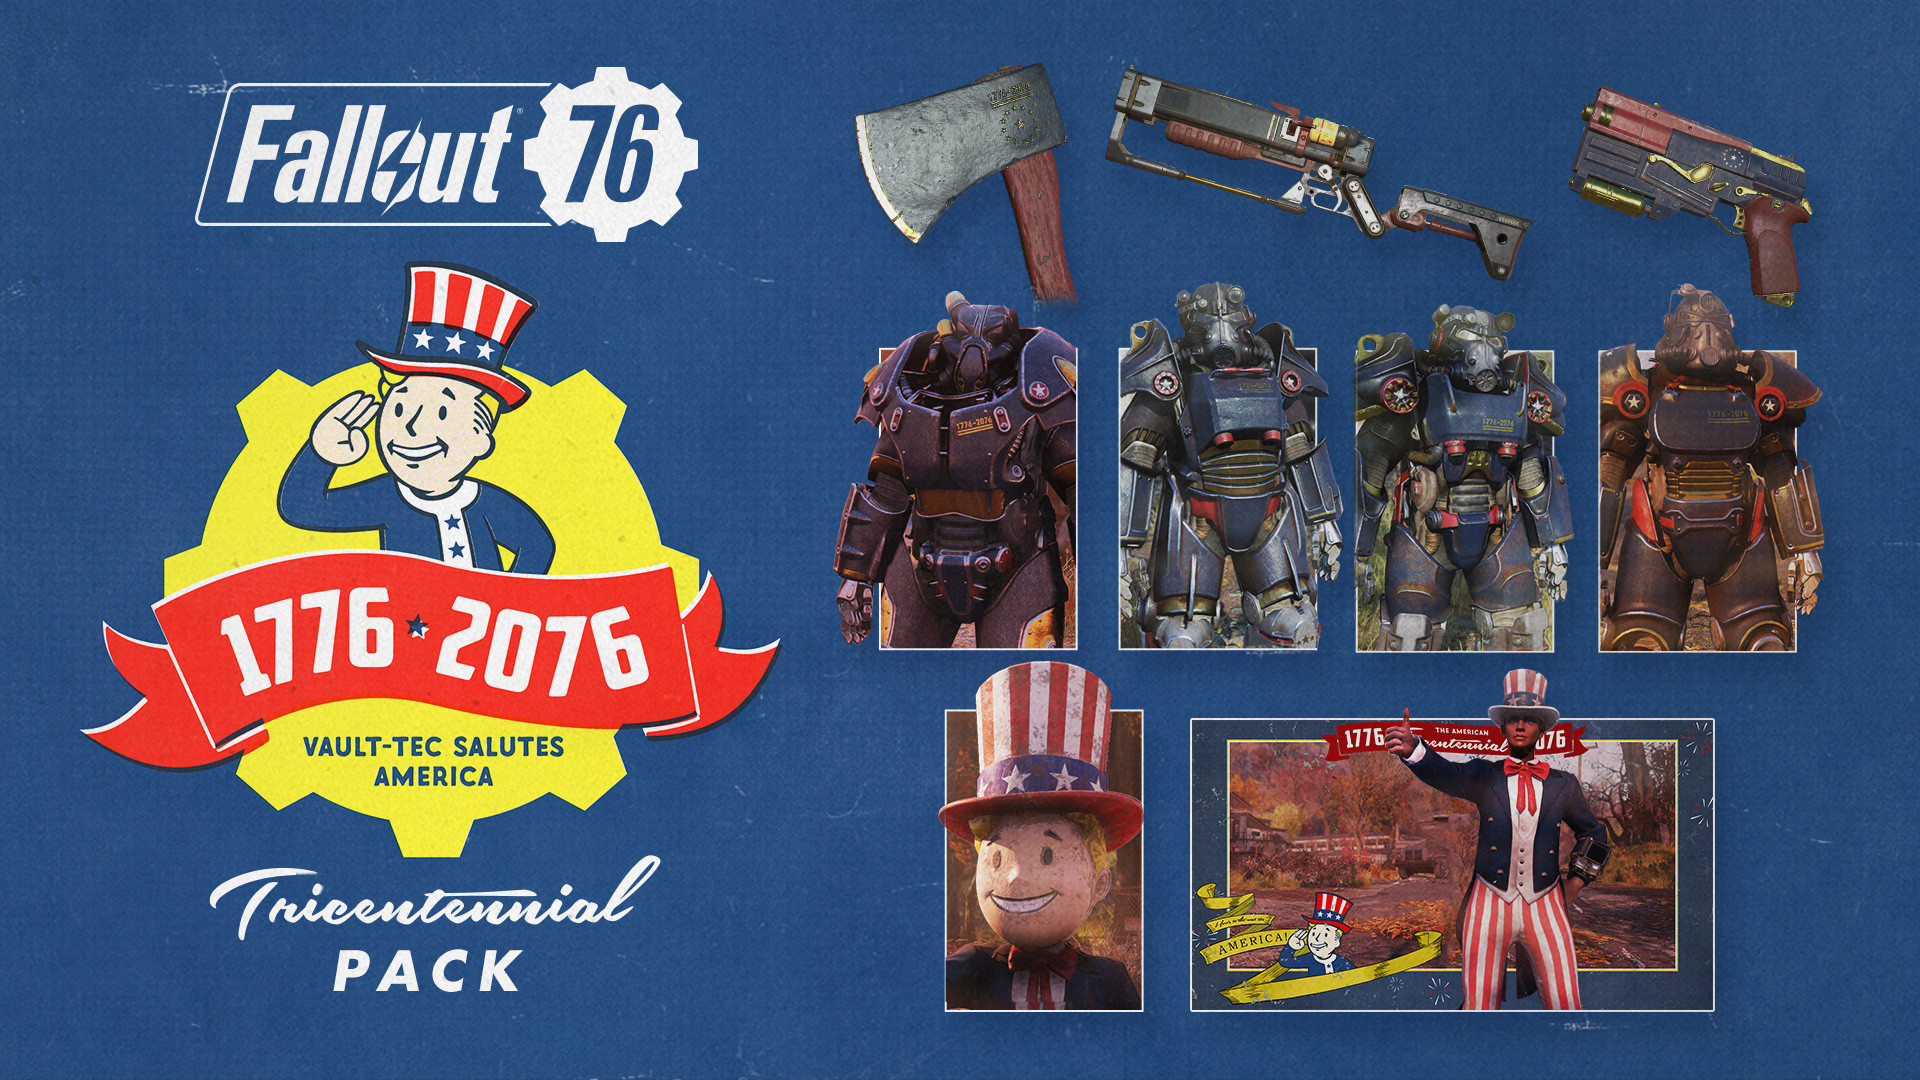 Fallout 76 - Tricentennial Pack DLC Steam CD Key 5.65 USD